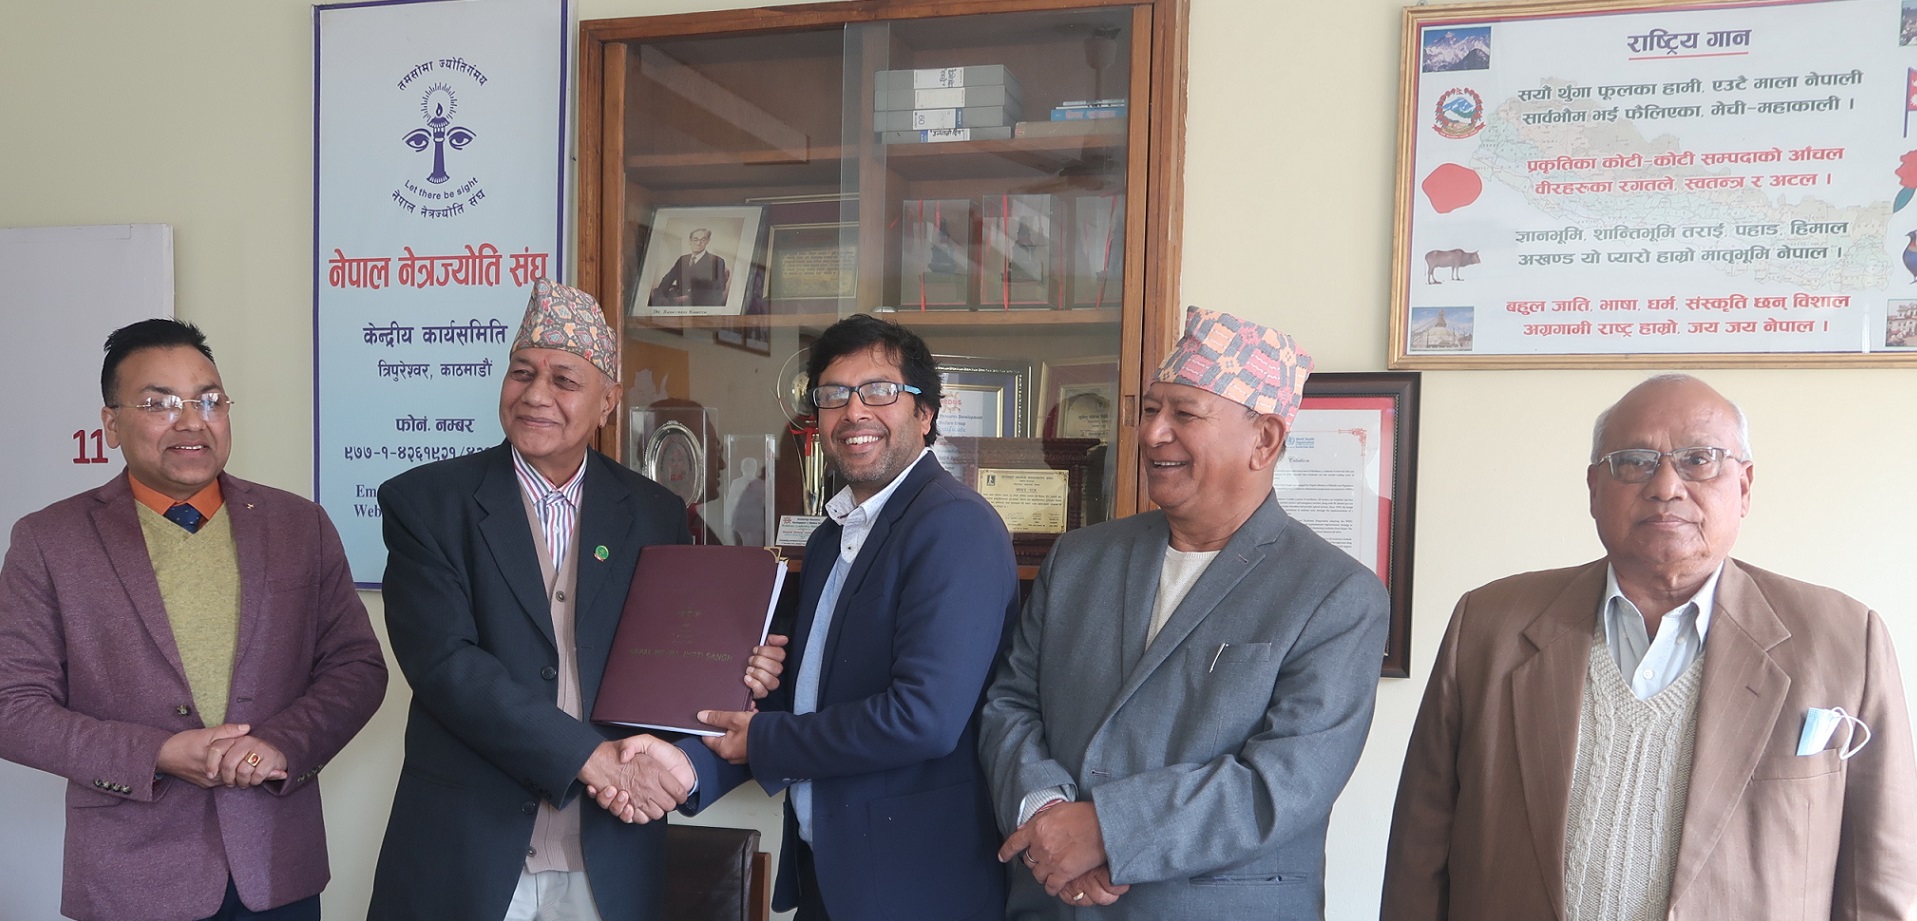 नेपाल नेत्रज्योति संघ र सिबिएमबीच सम्झौता, निःशुल्क आँखा तथा कान उपचारमा सहकार्य गर्ने